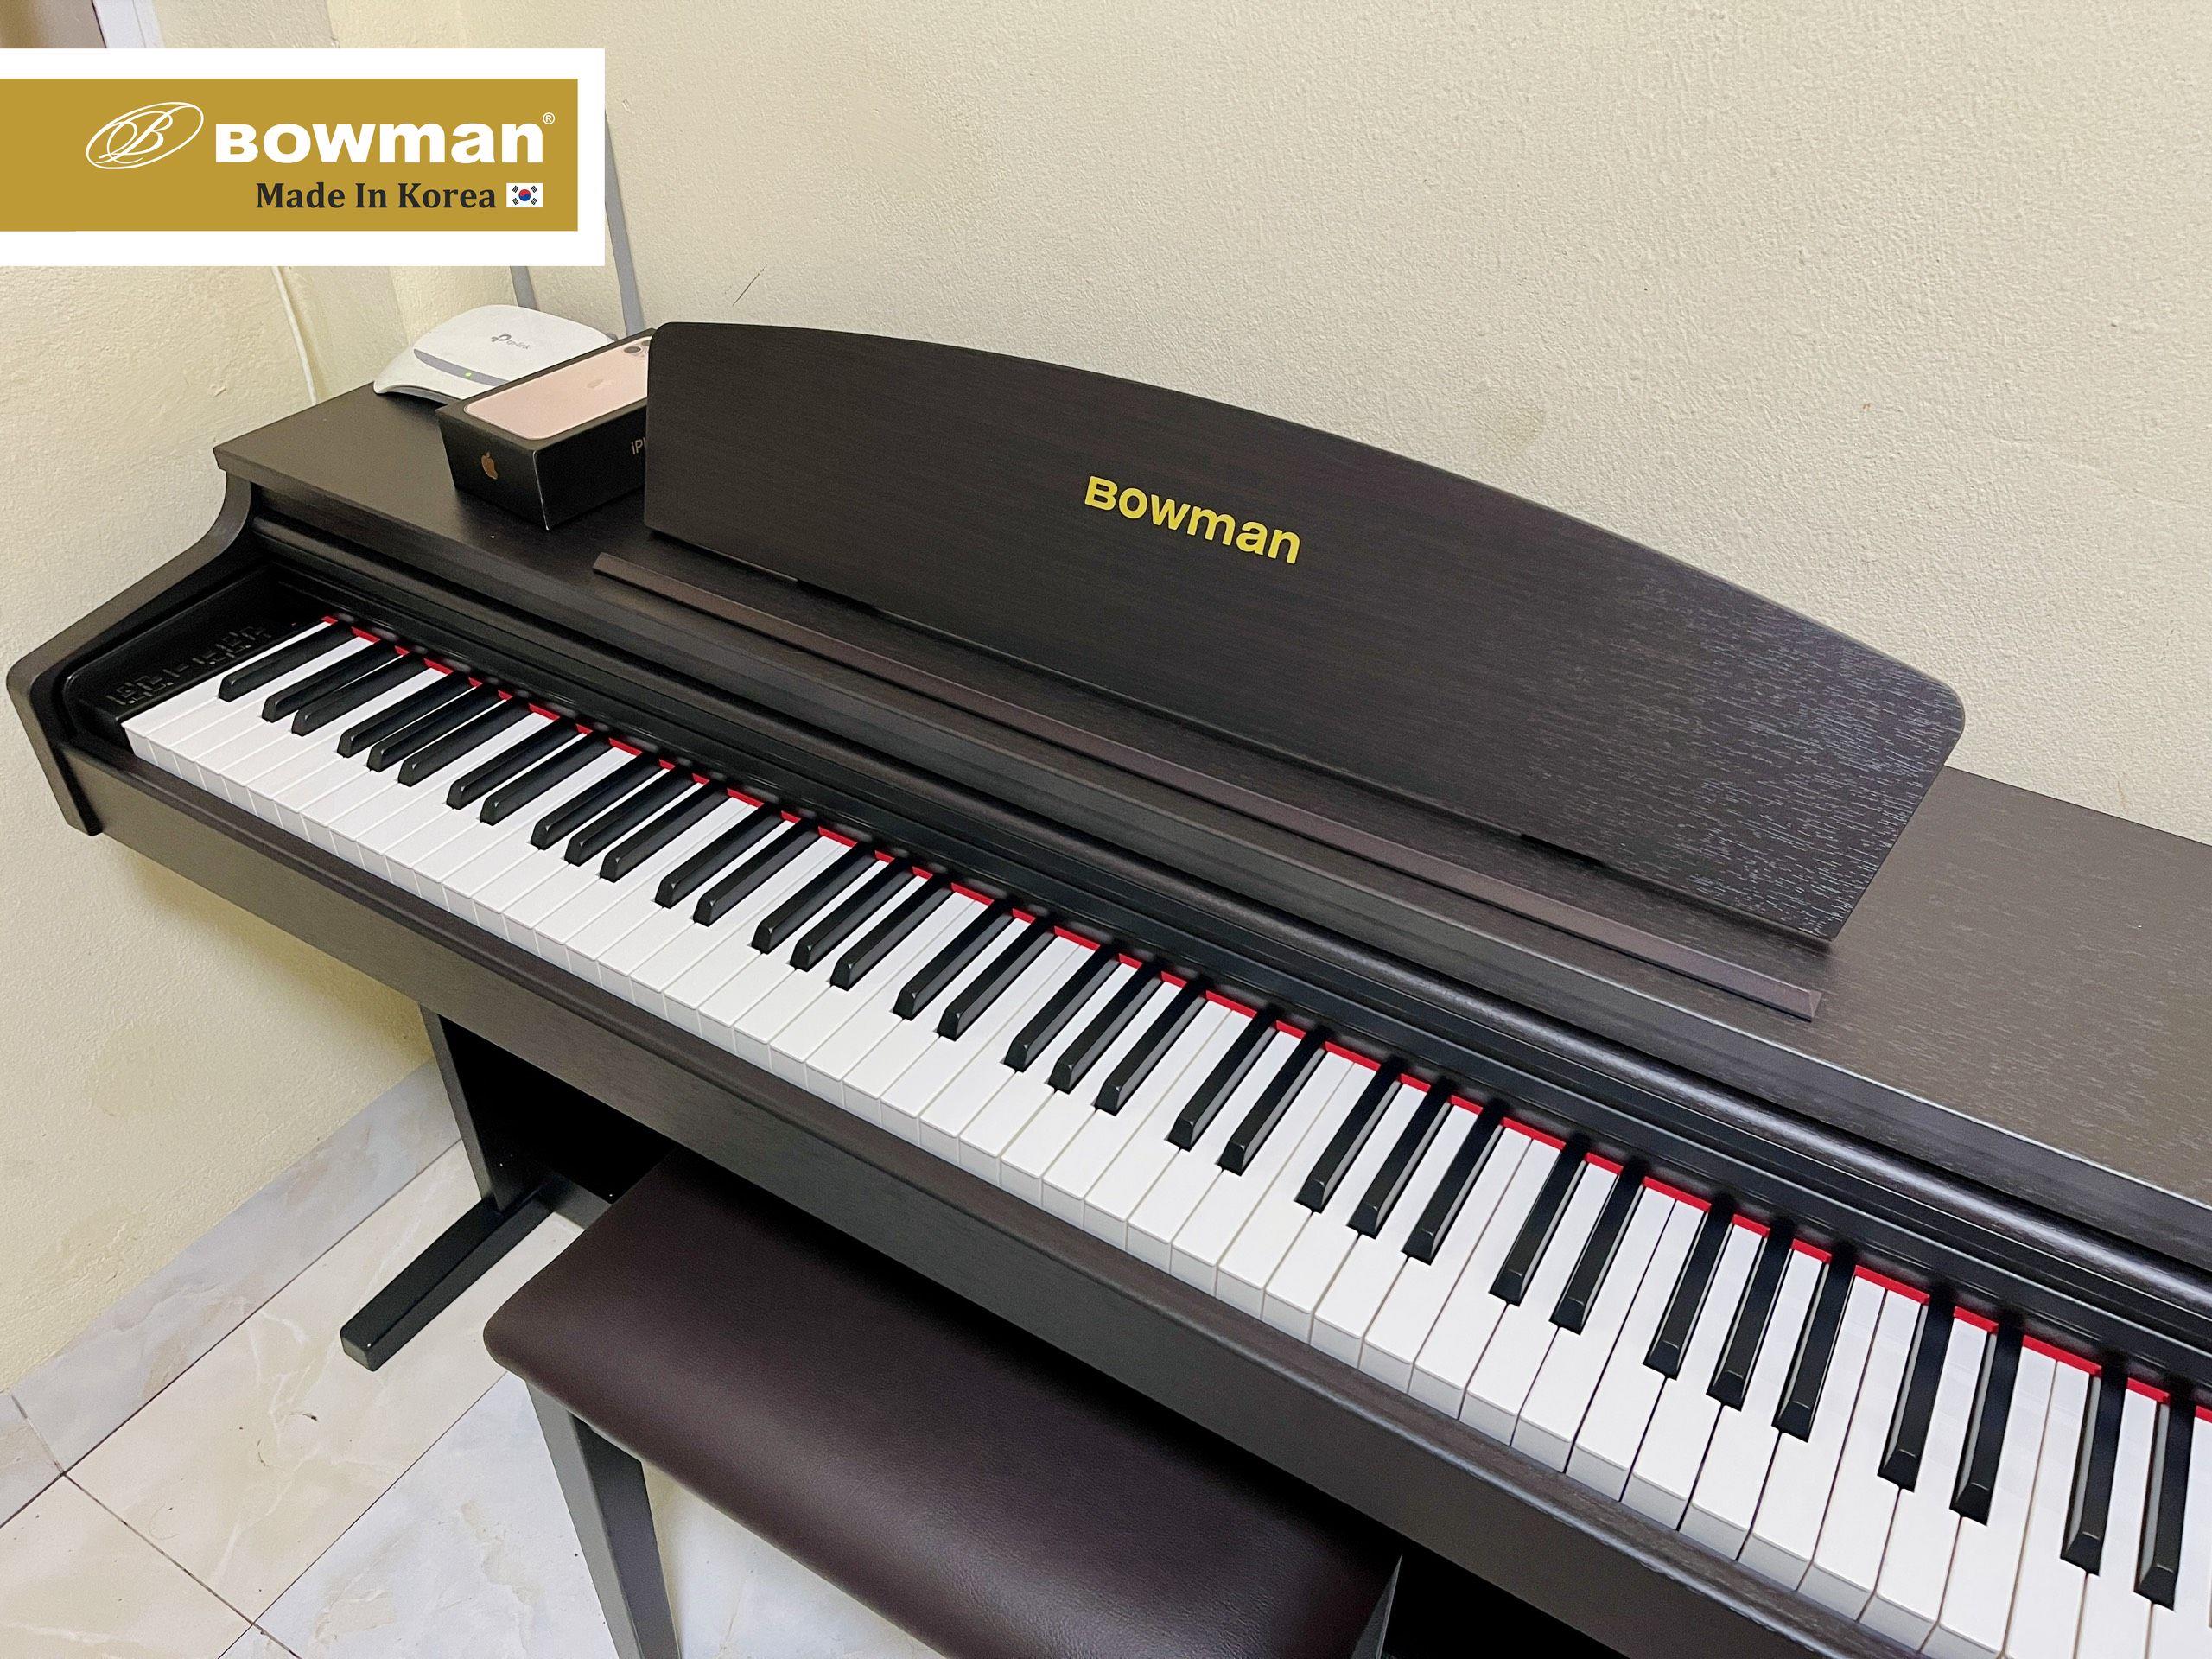 Bowman Piano chân thành cảm ơn Quý khách